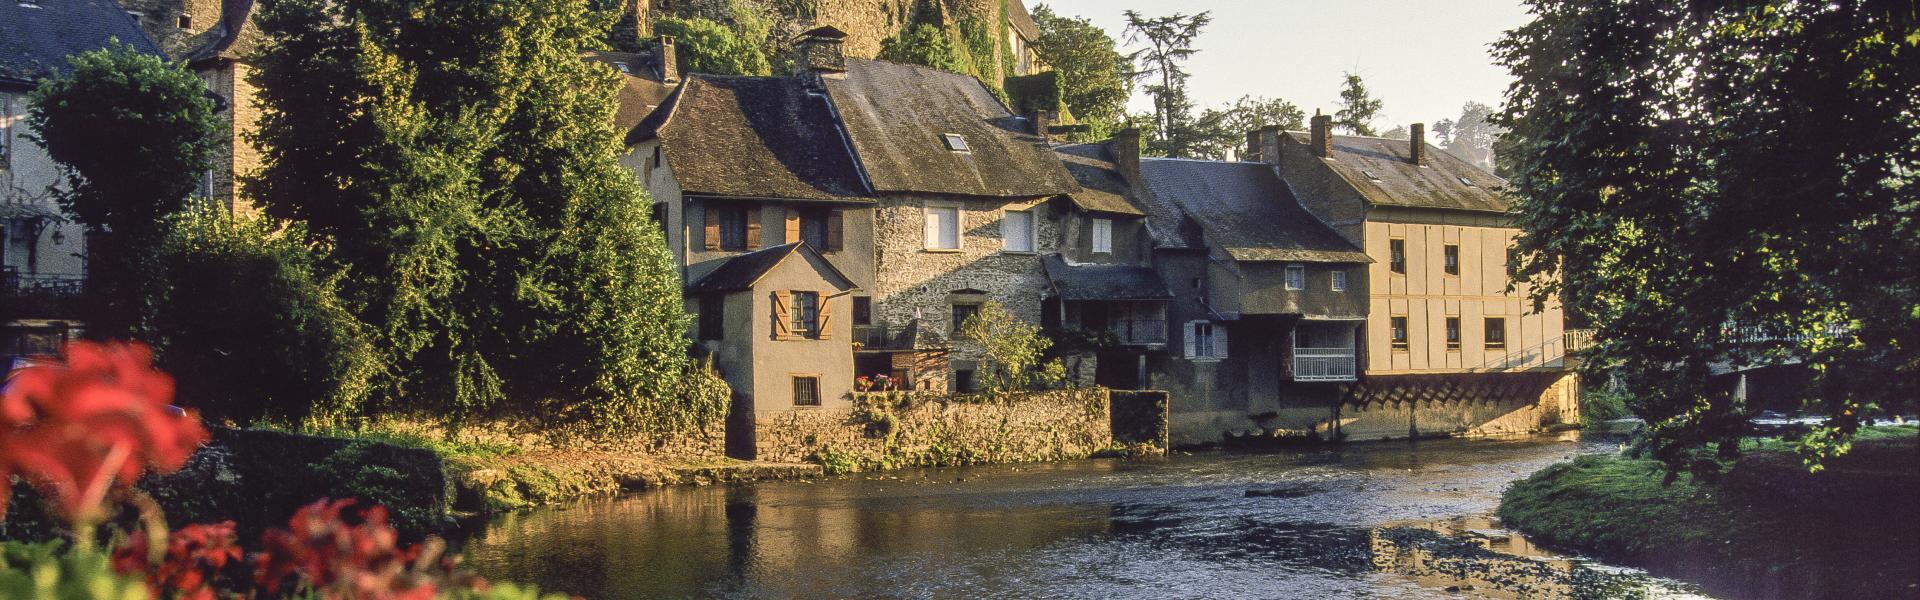 Location de vacances à Beaulieu-sur-Dordogne - Corrèze - amivac